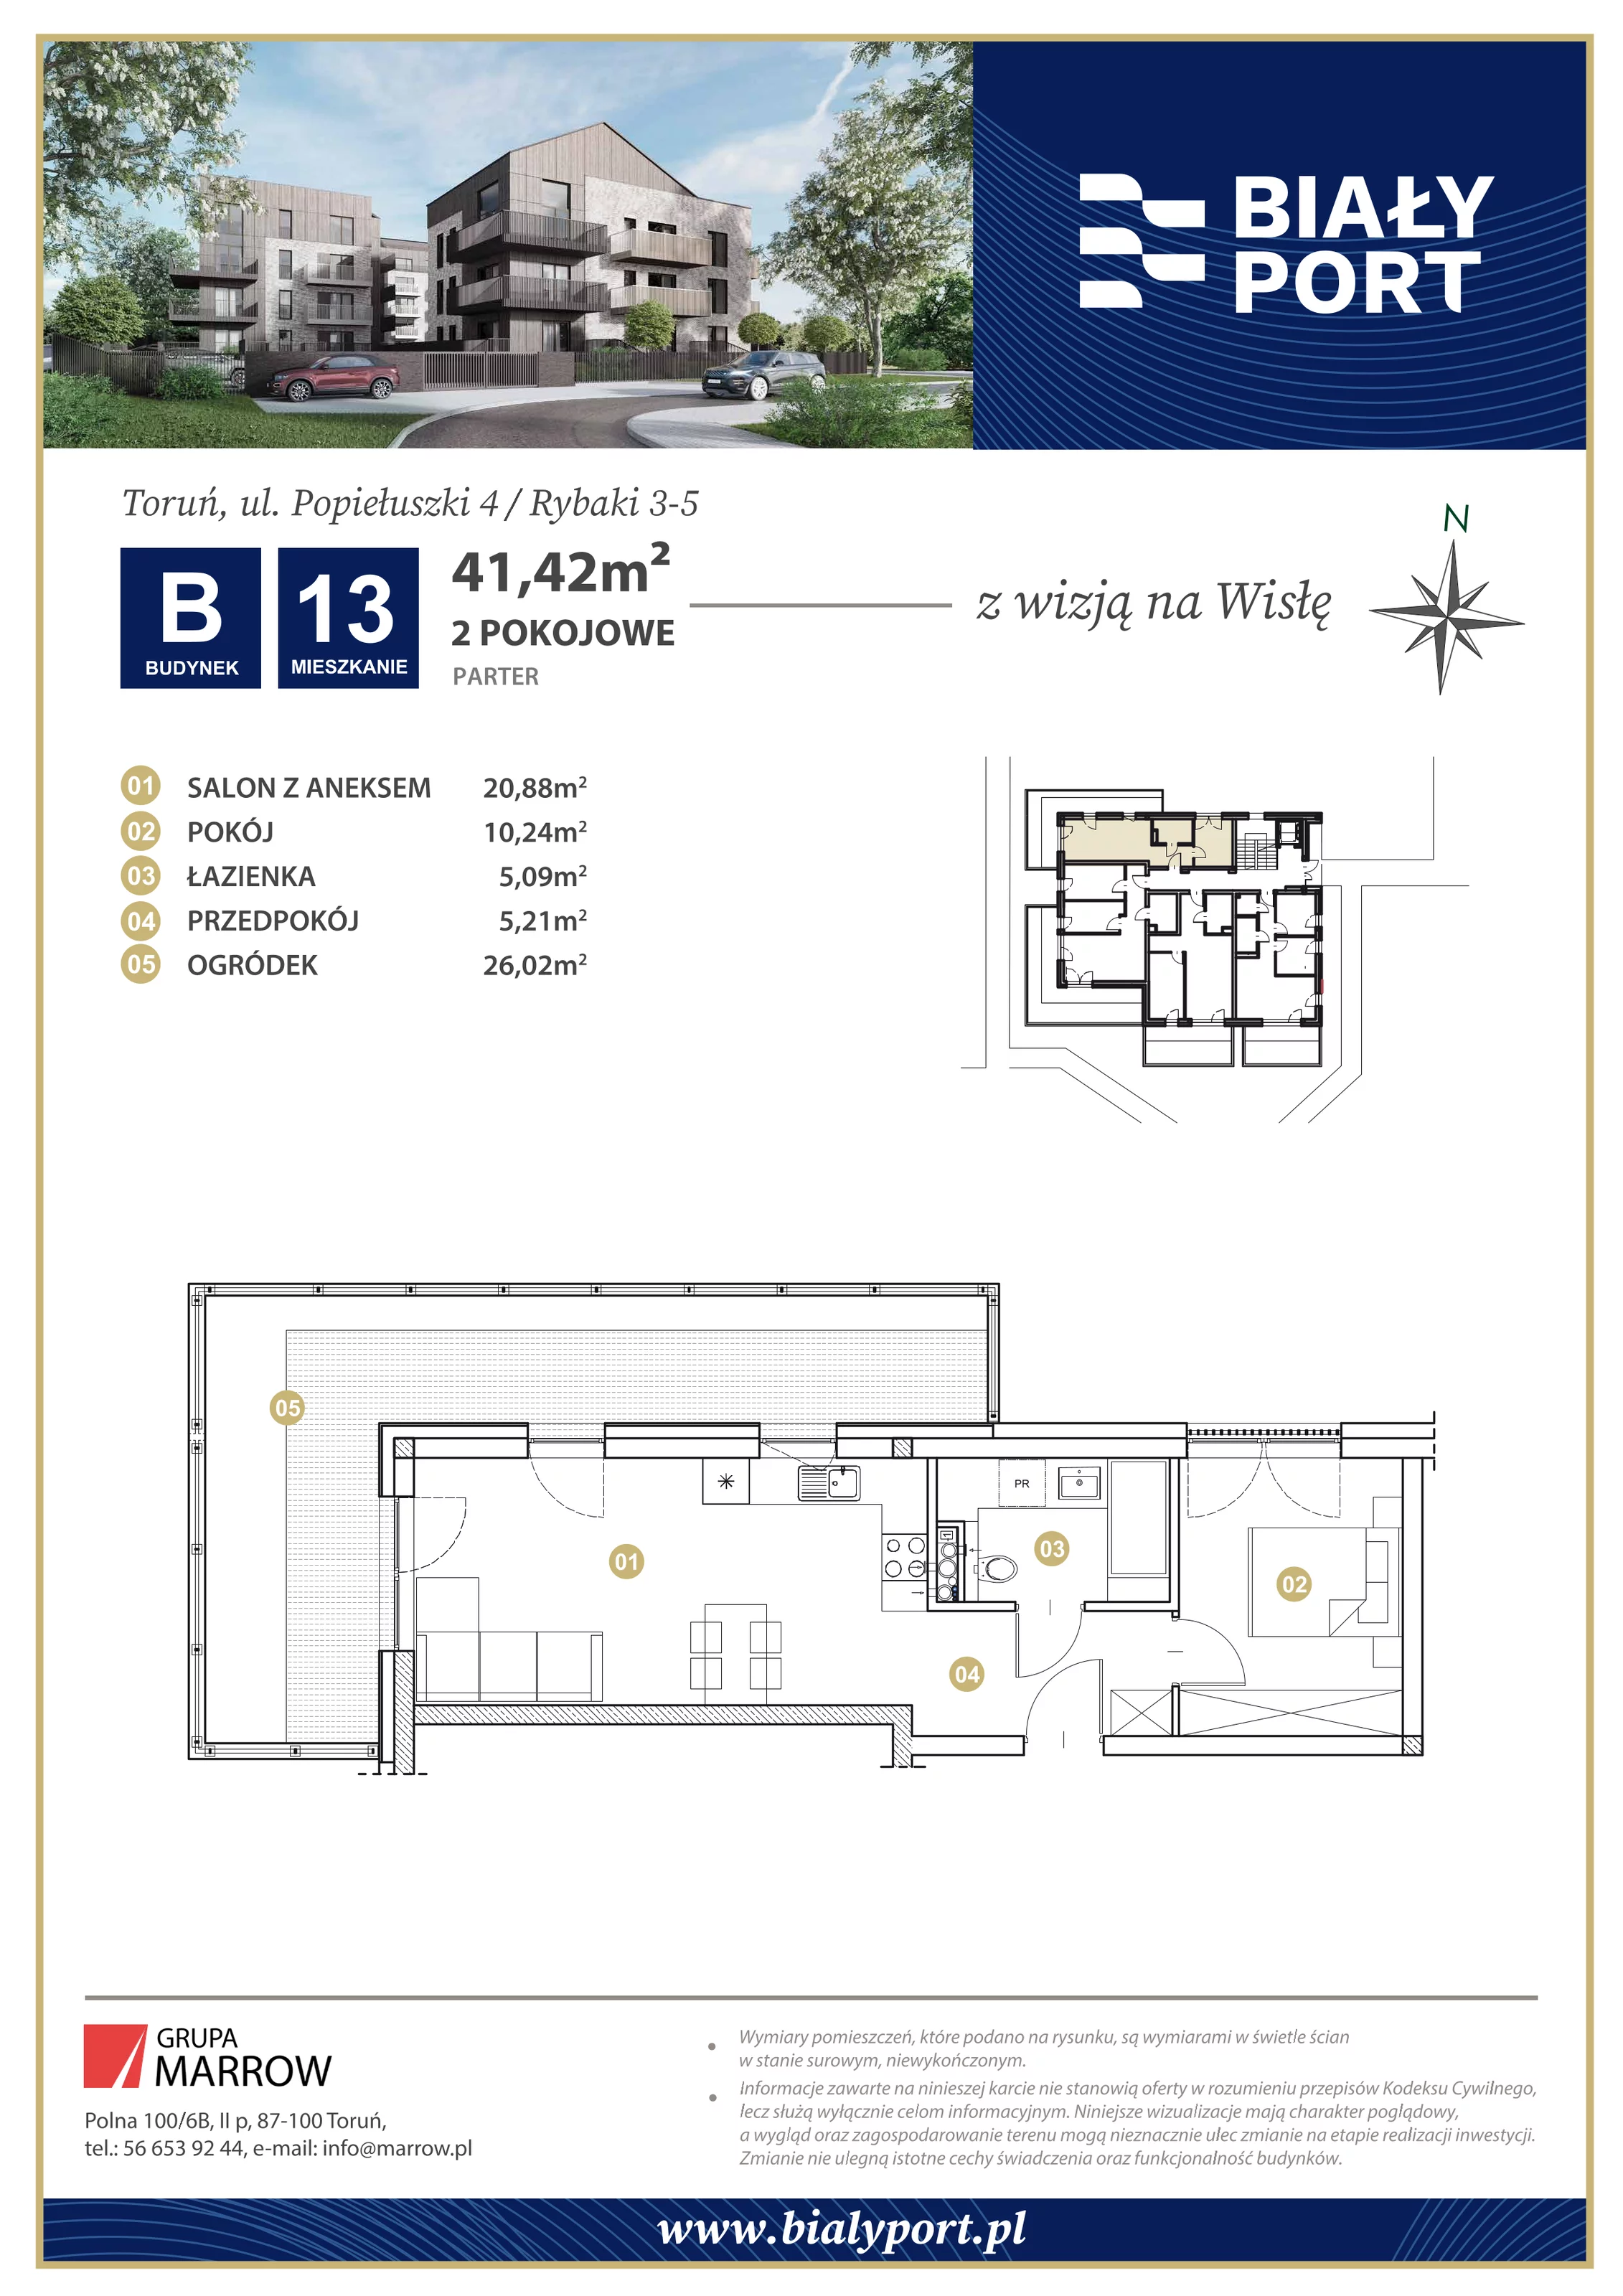 Mieszkanie 41,42 m², parter, oferta nr 13, Biały Port, Toruń, Rybaki, ul. Popiełuszki 4